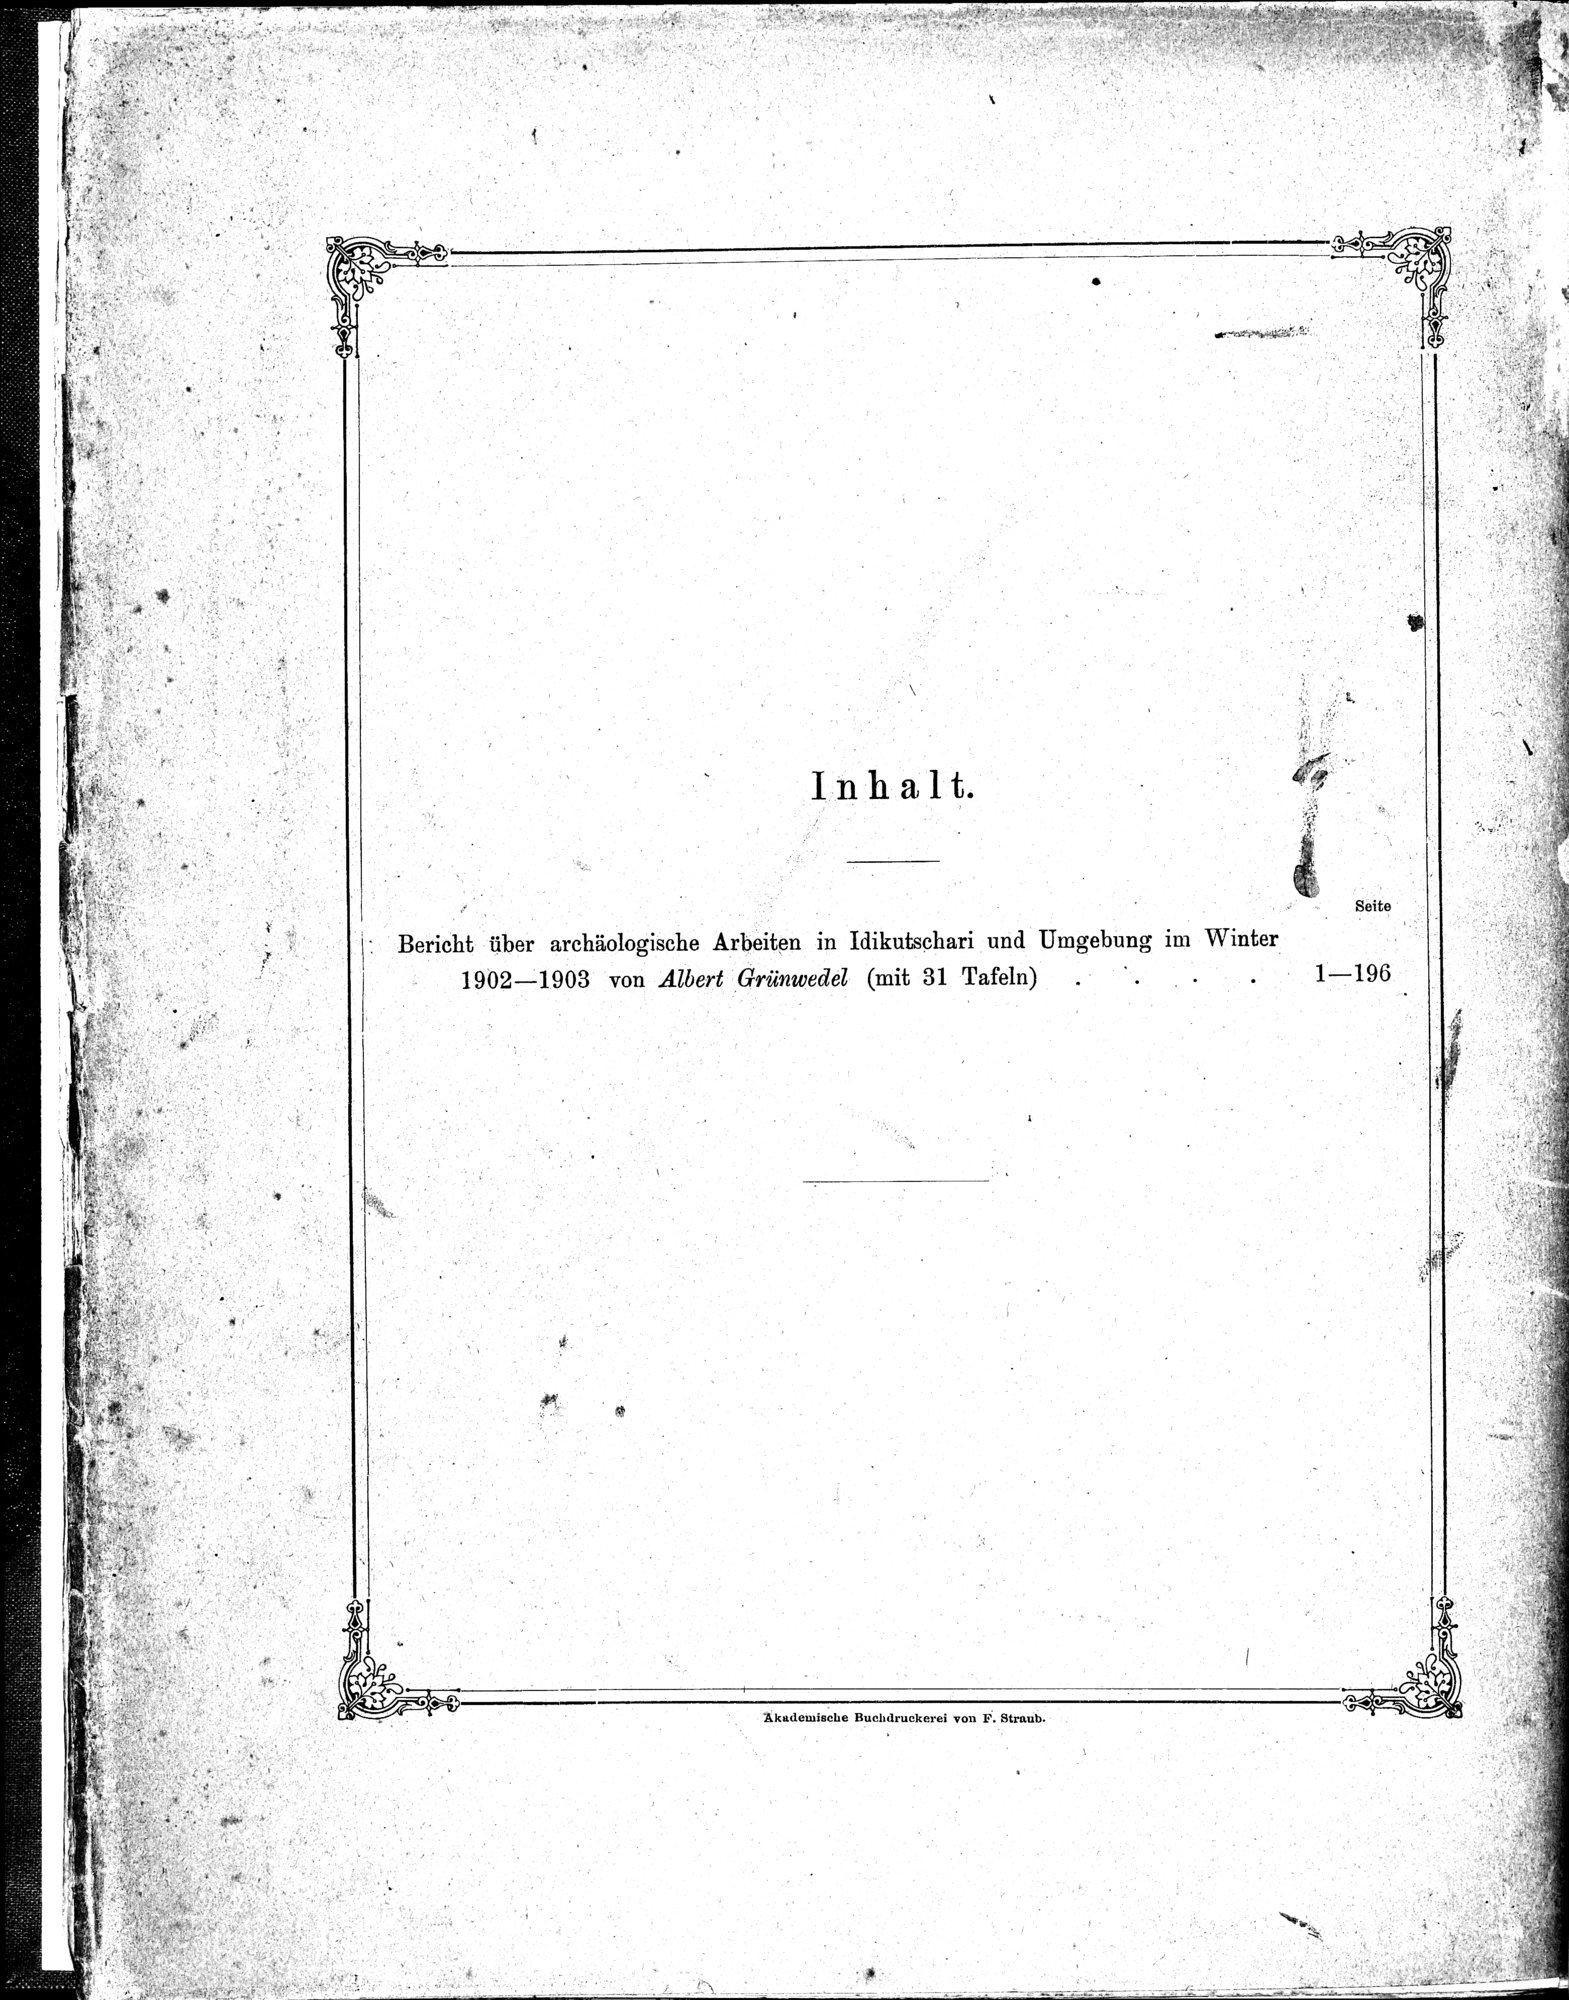 Bericht über archäologische Arbeiten in Idikutschari und Umgebung im Winter 1902-1903 : vol.1 / Page 272 (Grayscale High Resolution Image)